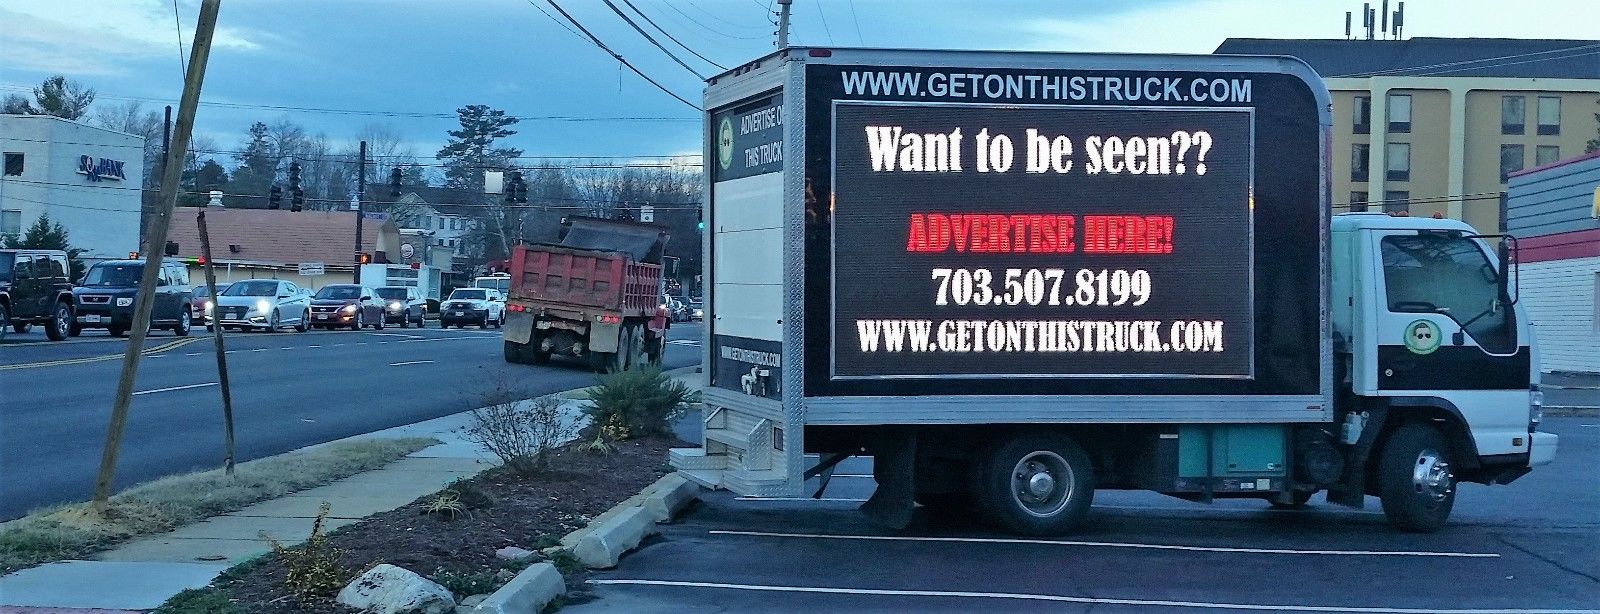 LED Billboard Truck